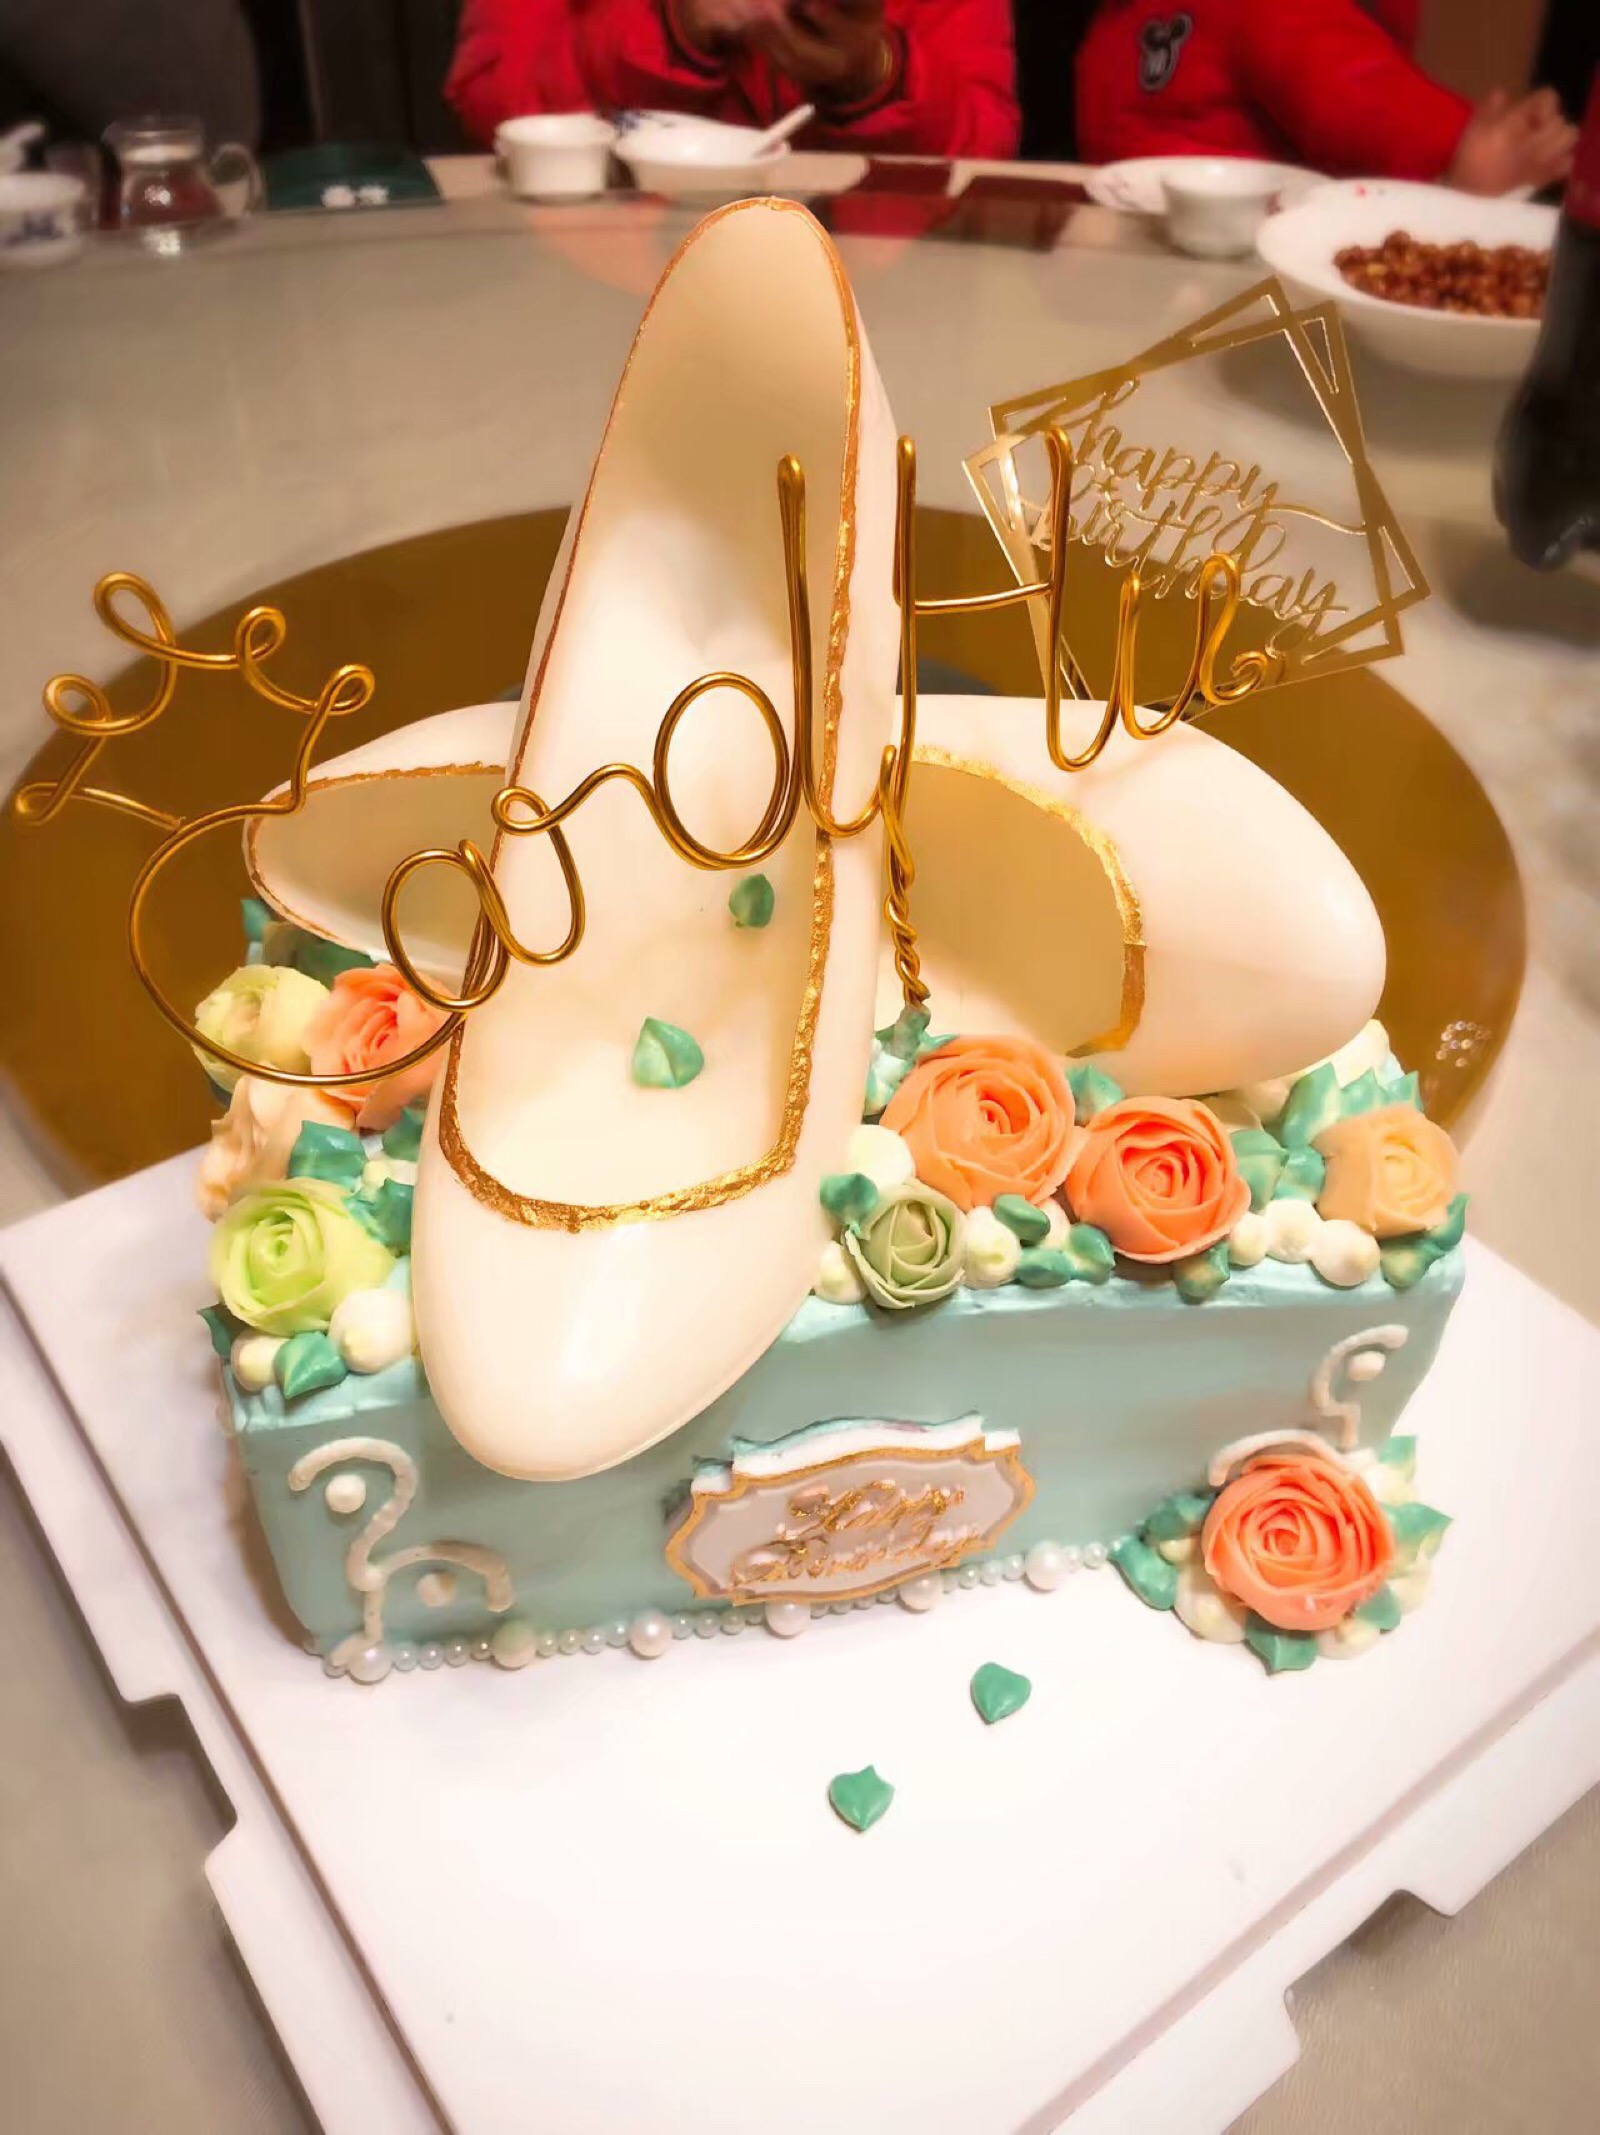 32岁女人生日蛋糕款式图片